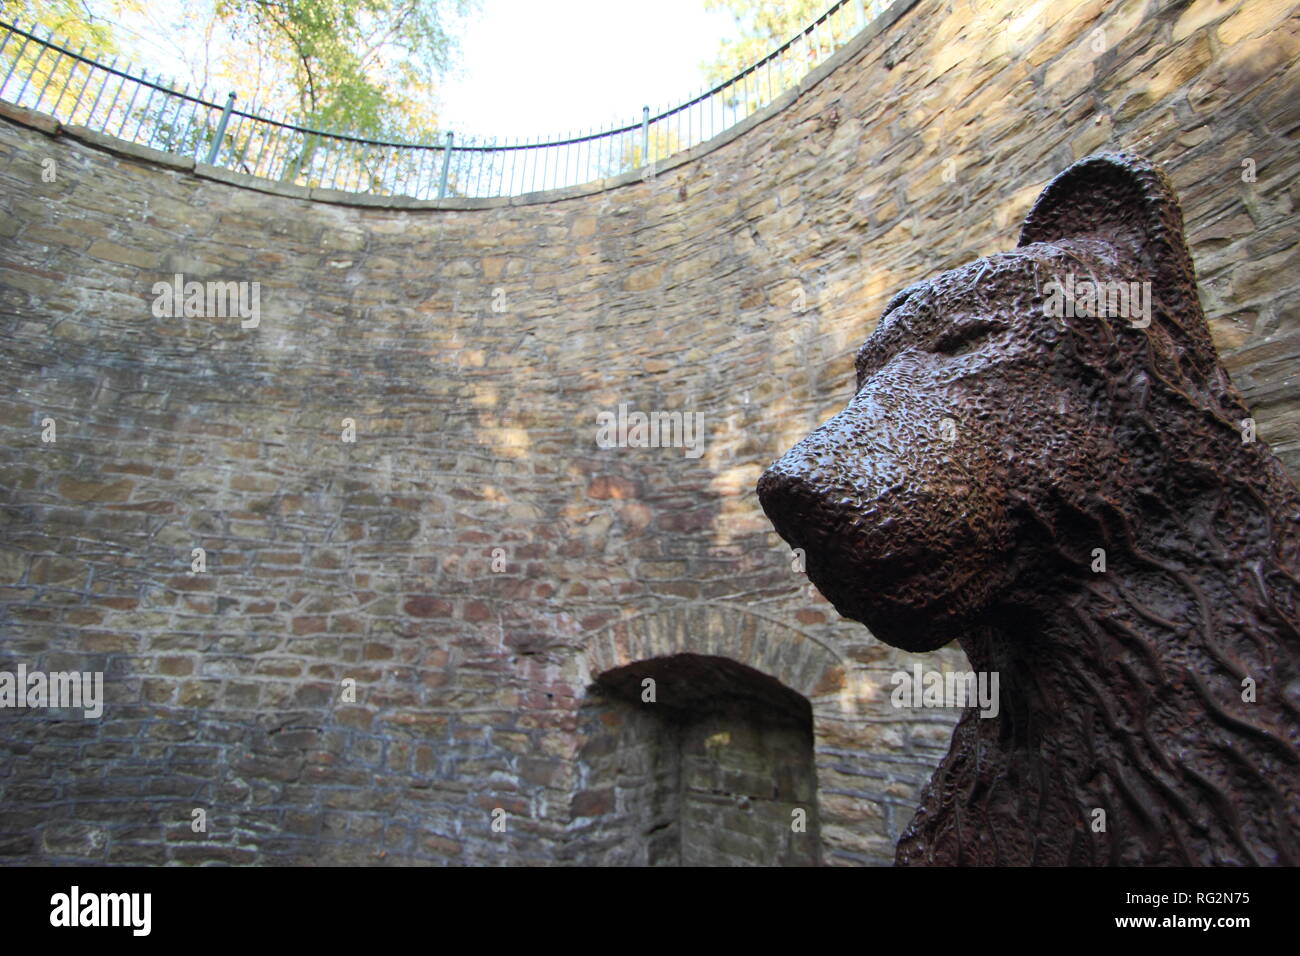 Bärengraben mit Bär Statue an der Sheffield Botanischen Gärten, Yorkshire, England, UK. Angeblich besten erhaltene Beispiel einer Bär Grube in Großbritannien zu werden. Stockfoto